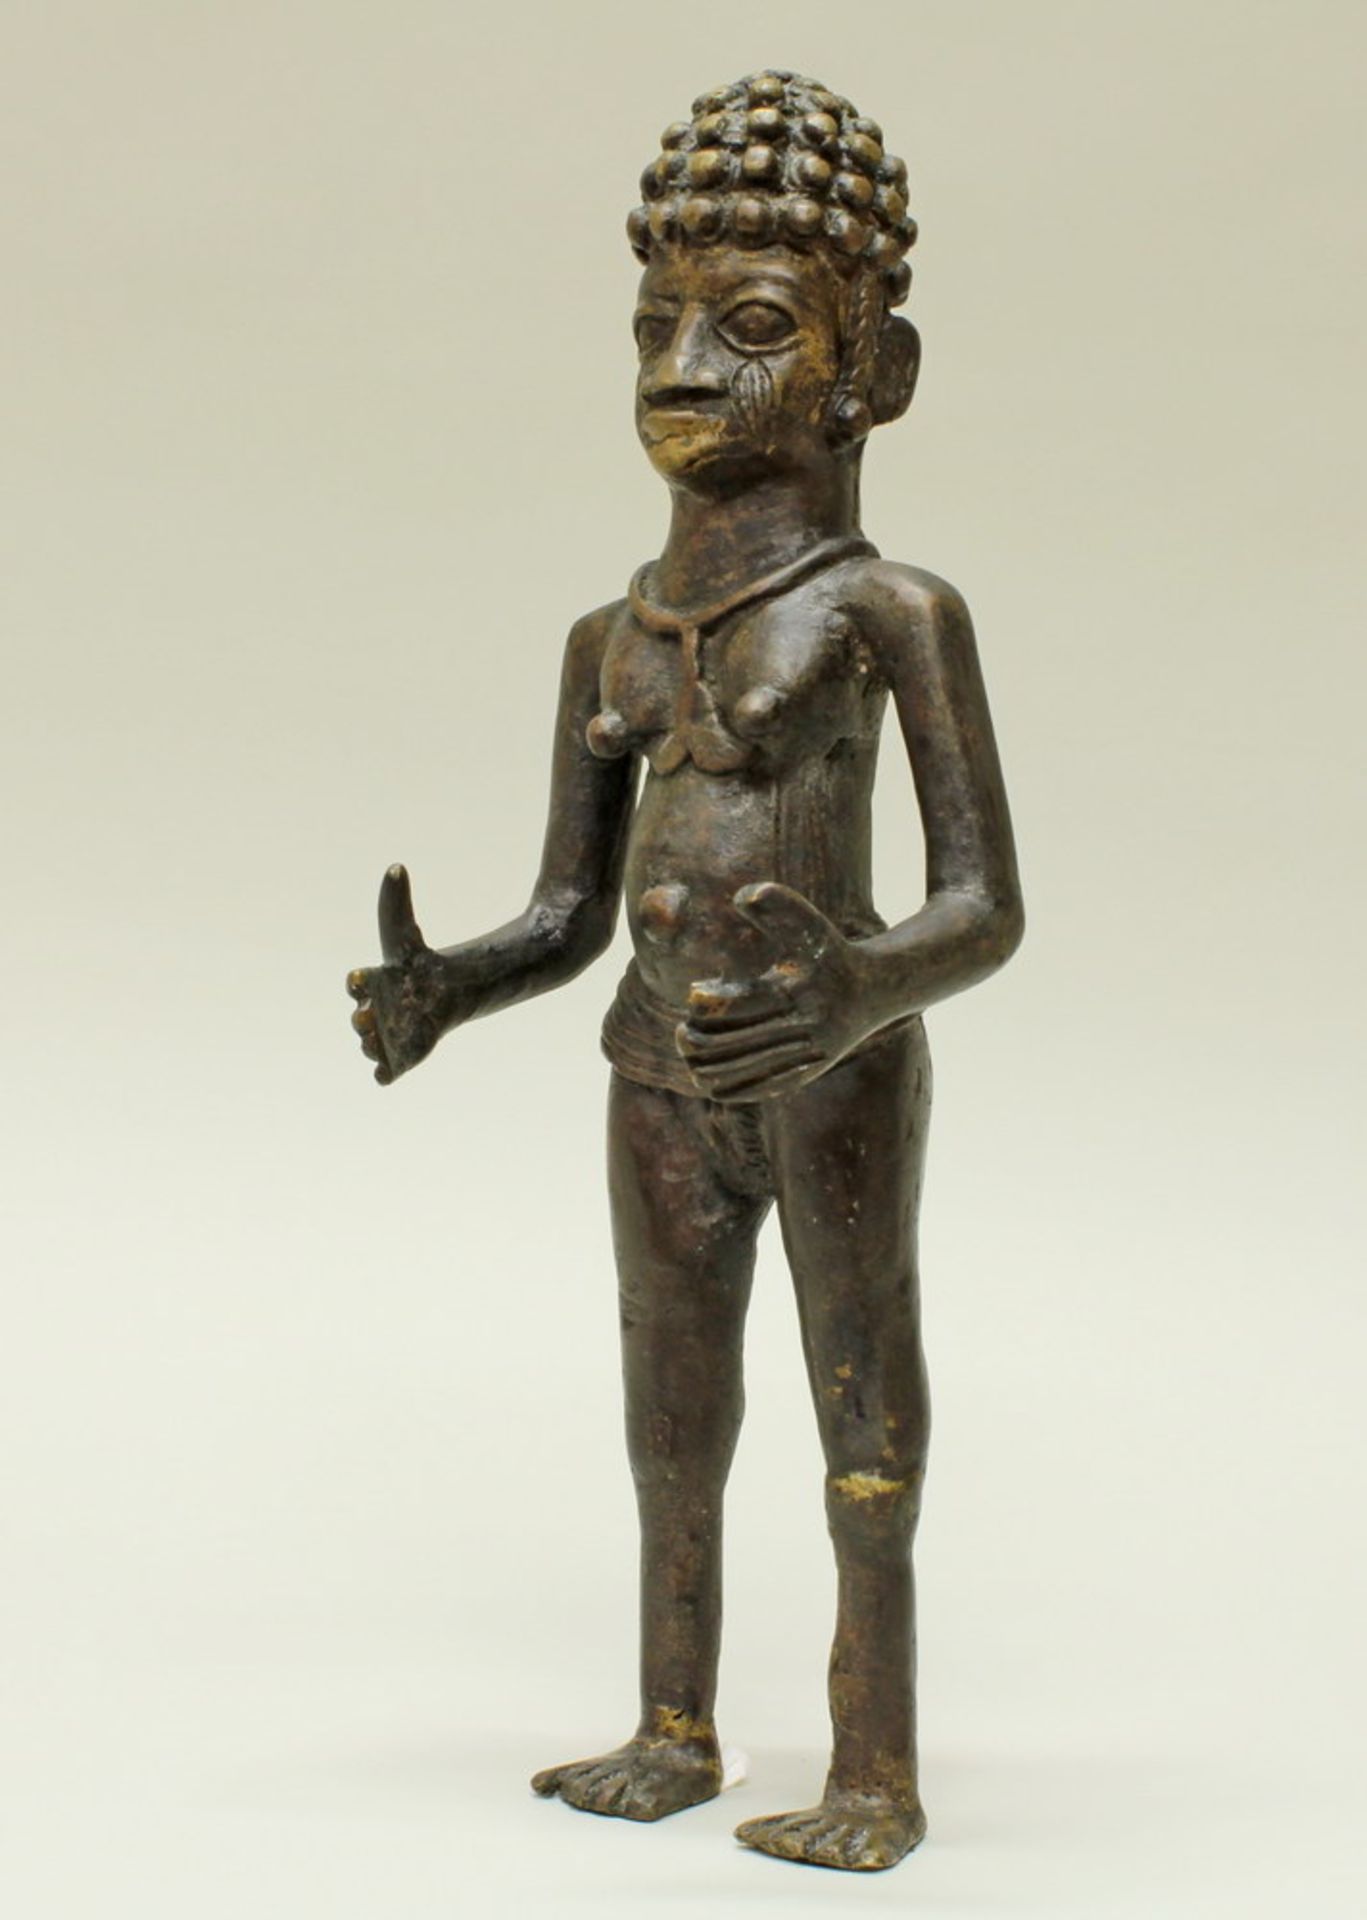 Bronzeskulptur, "Afrikaner", Benin, Afrika, 43 cm hoch- - -25.00 % buyer's premium on the hammer